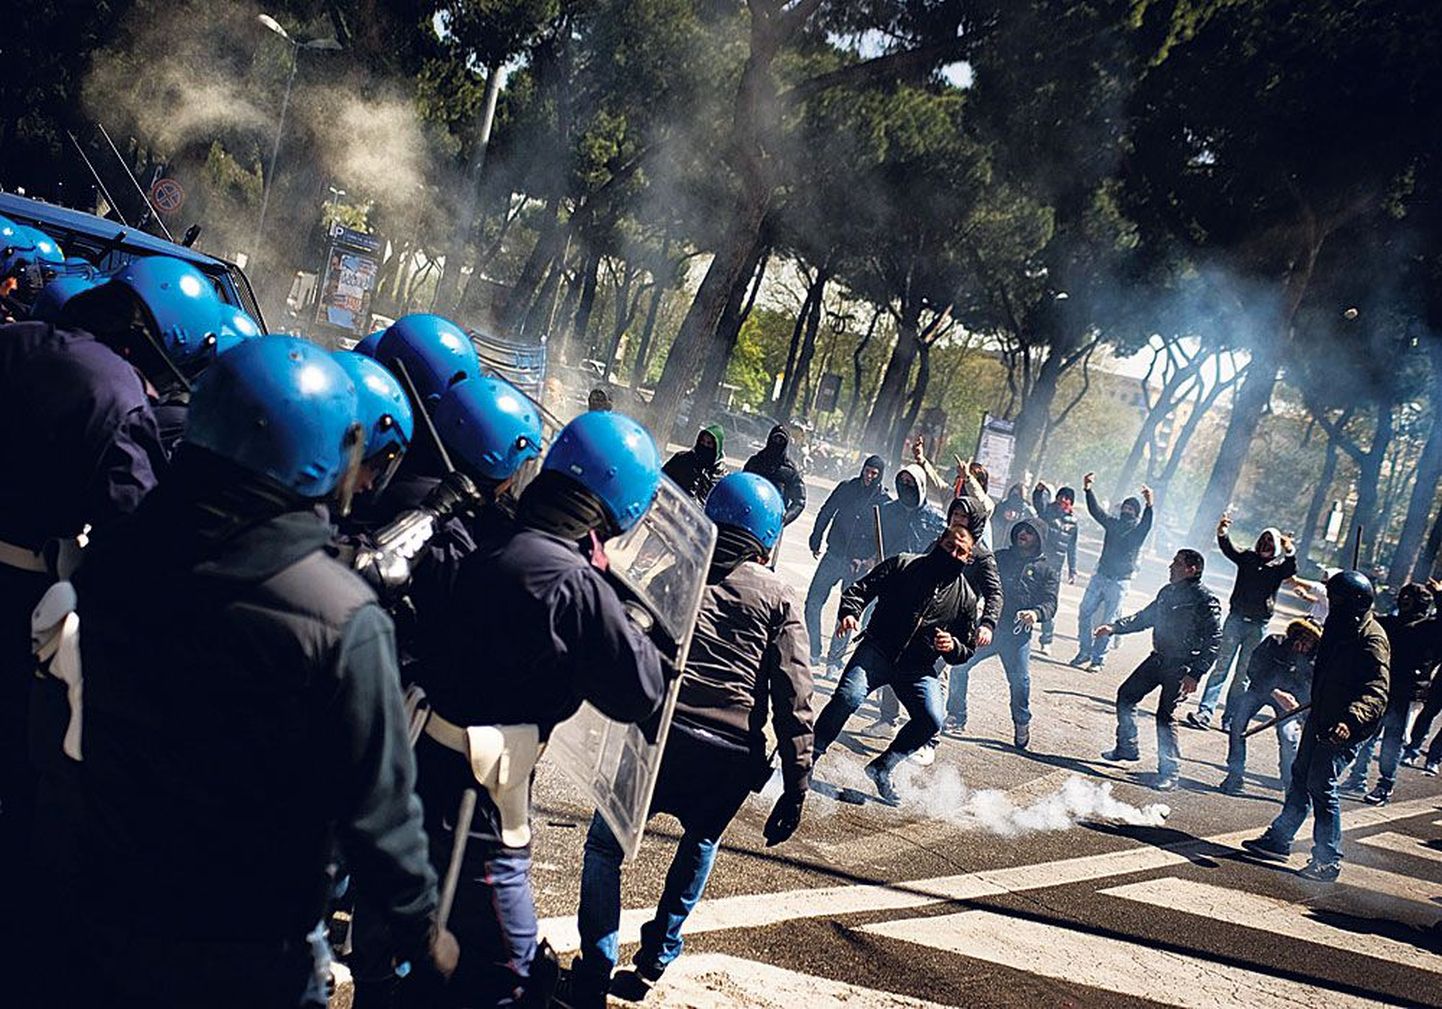 Итальянский полицейский спецназ в действии: с риском для жизни приходится усмирять бесчинствующих хулиганов.